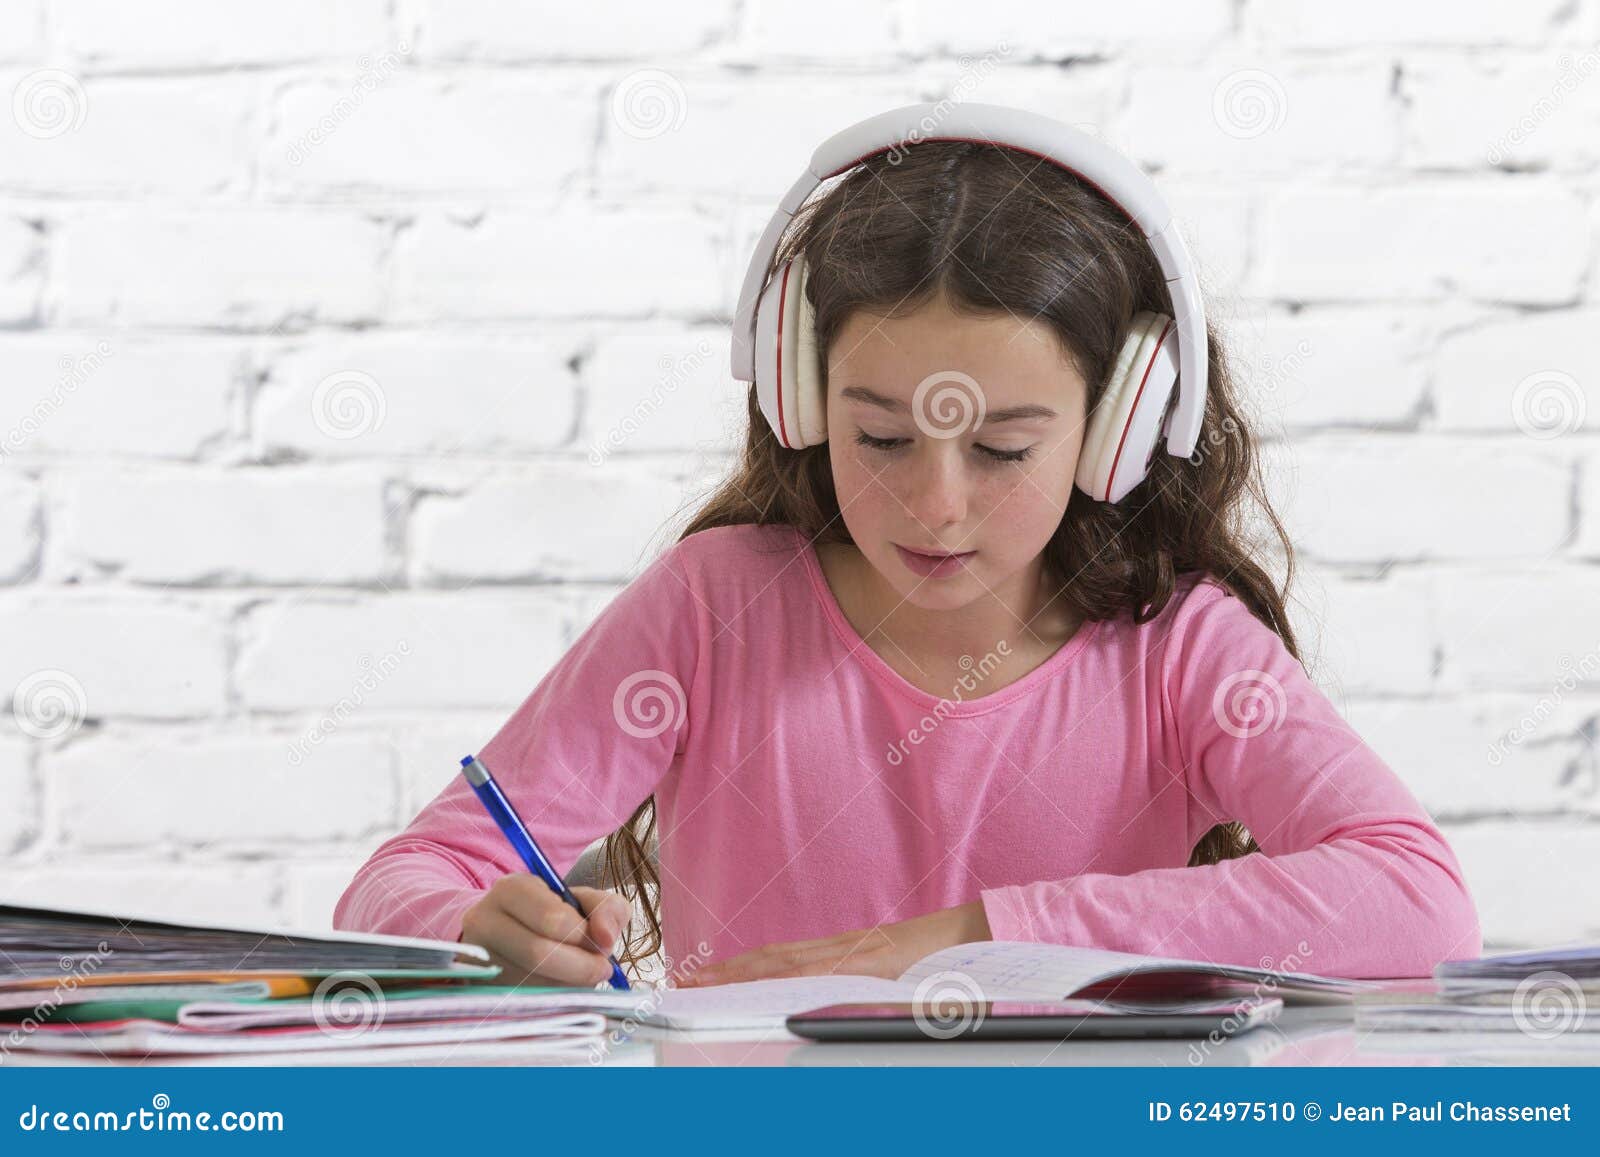 girl doing homework music